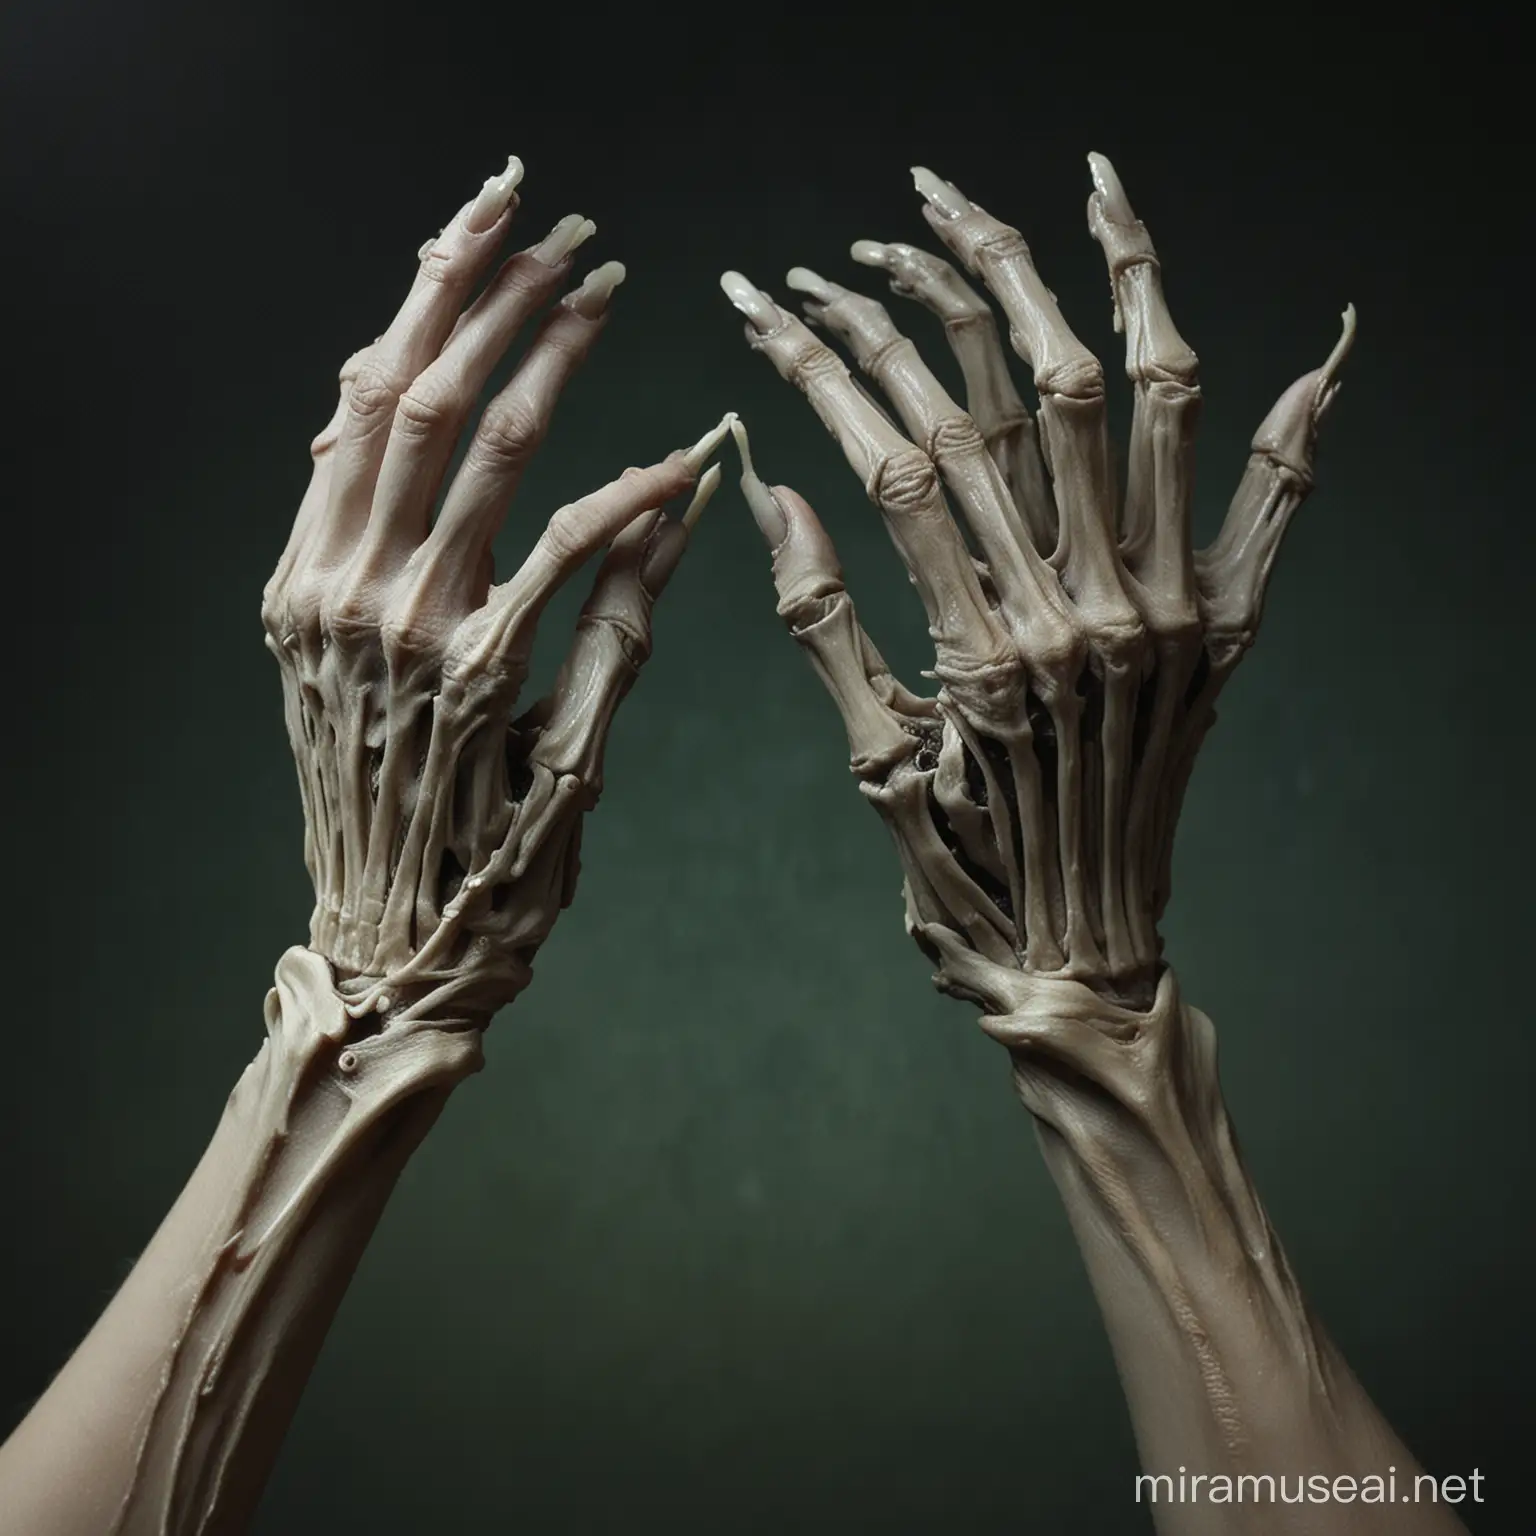 Eerie Skeleton Hands Emerging from Darkness